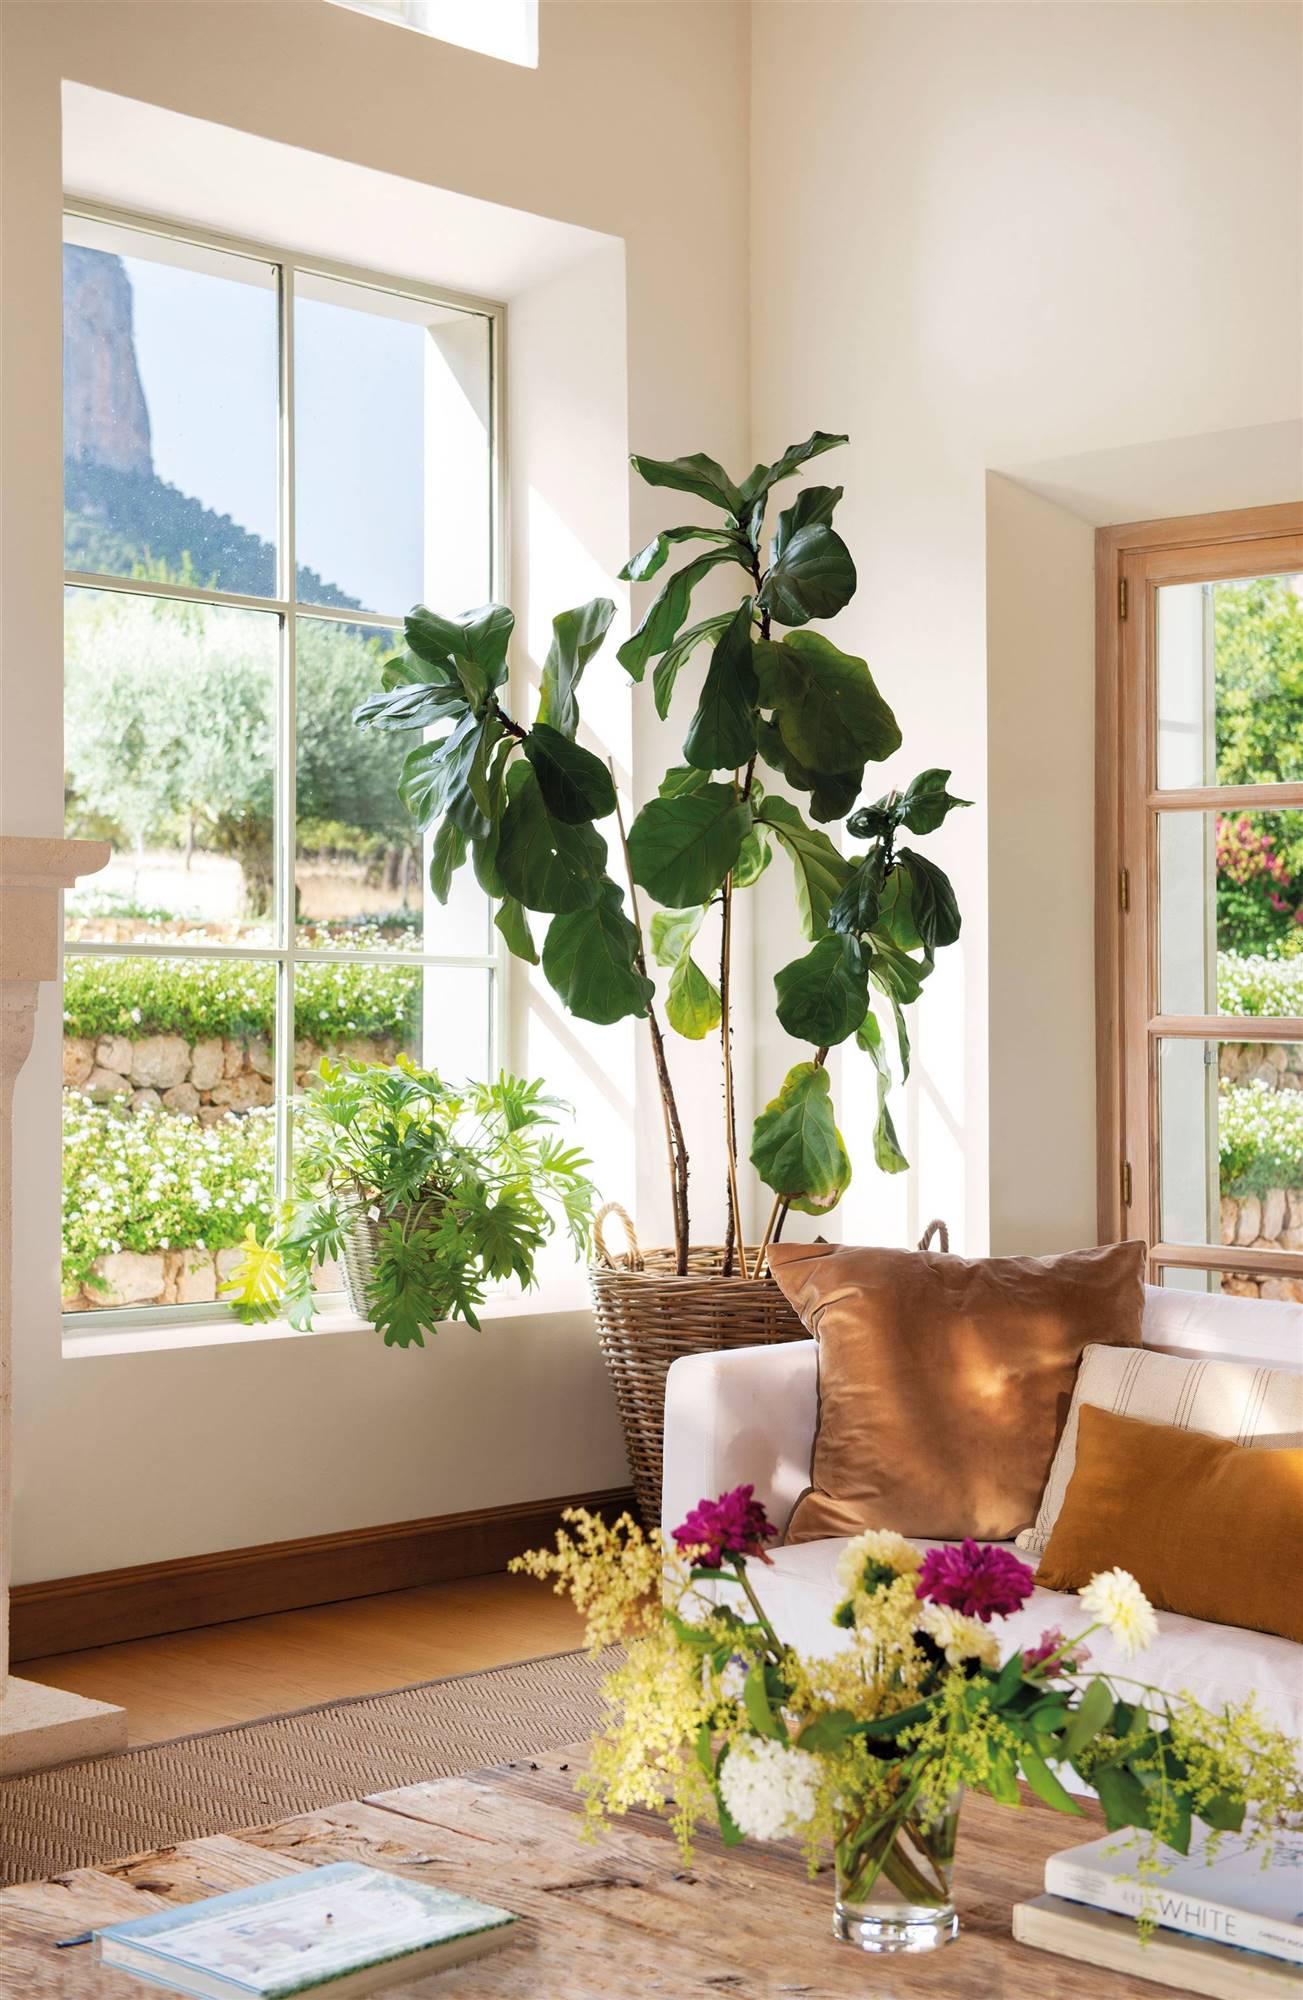 Salón con ventanal, plantas y macetas estilo cestas de fibras naturales. 